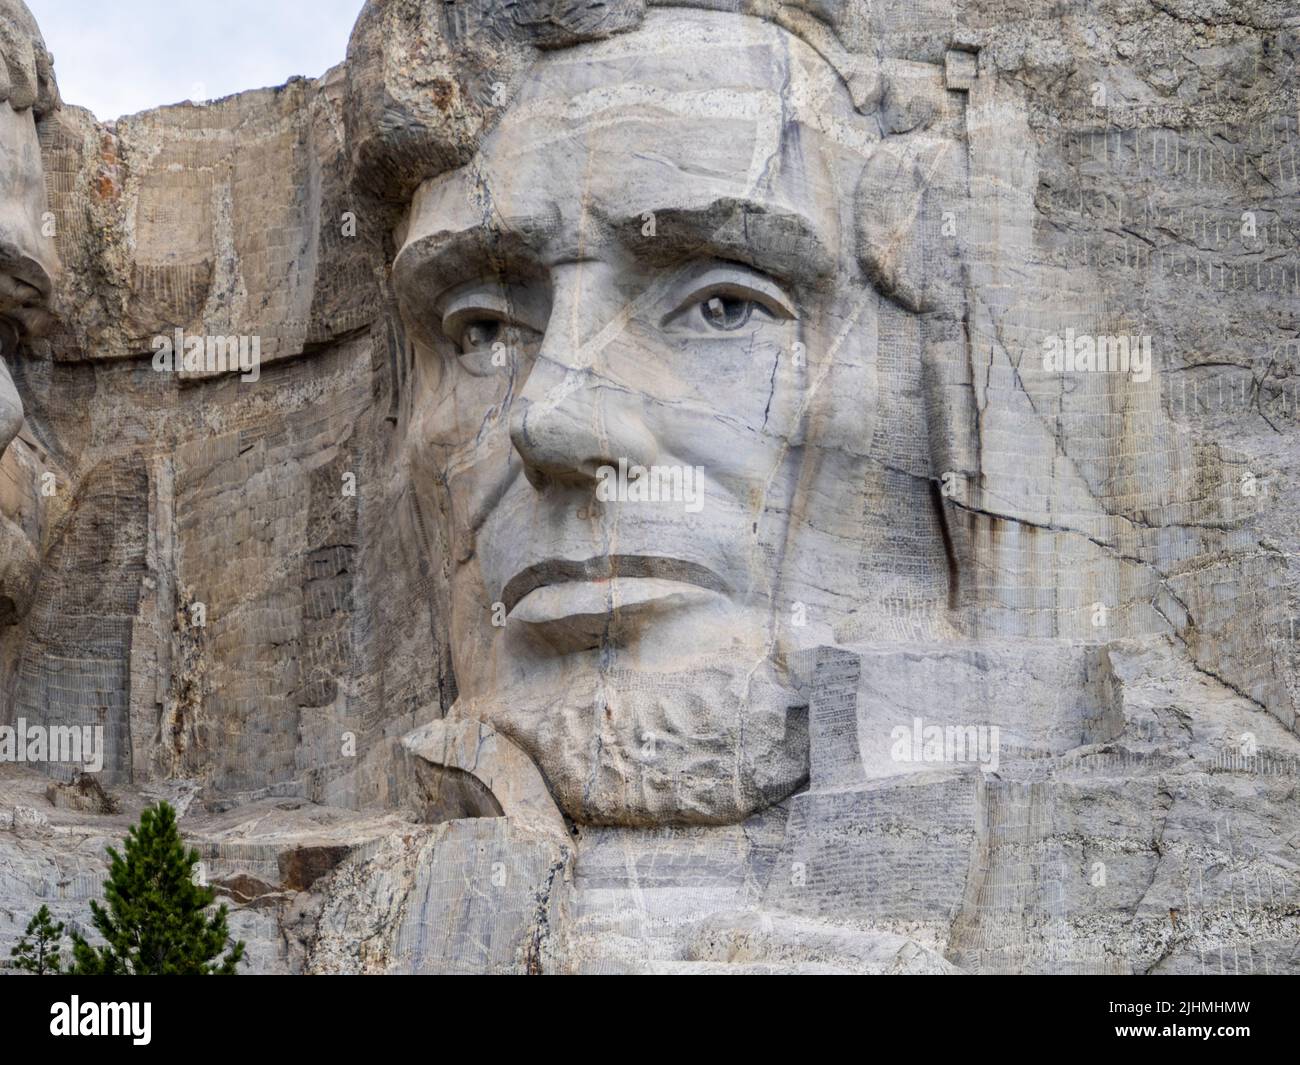 Gros plan de la sculpture d'Abraham, Lincoln au Mount Rushmore National Memorial dans les Black Hills du Dakota du Sud des États-Unis Banque D'Images